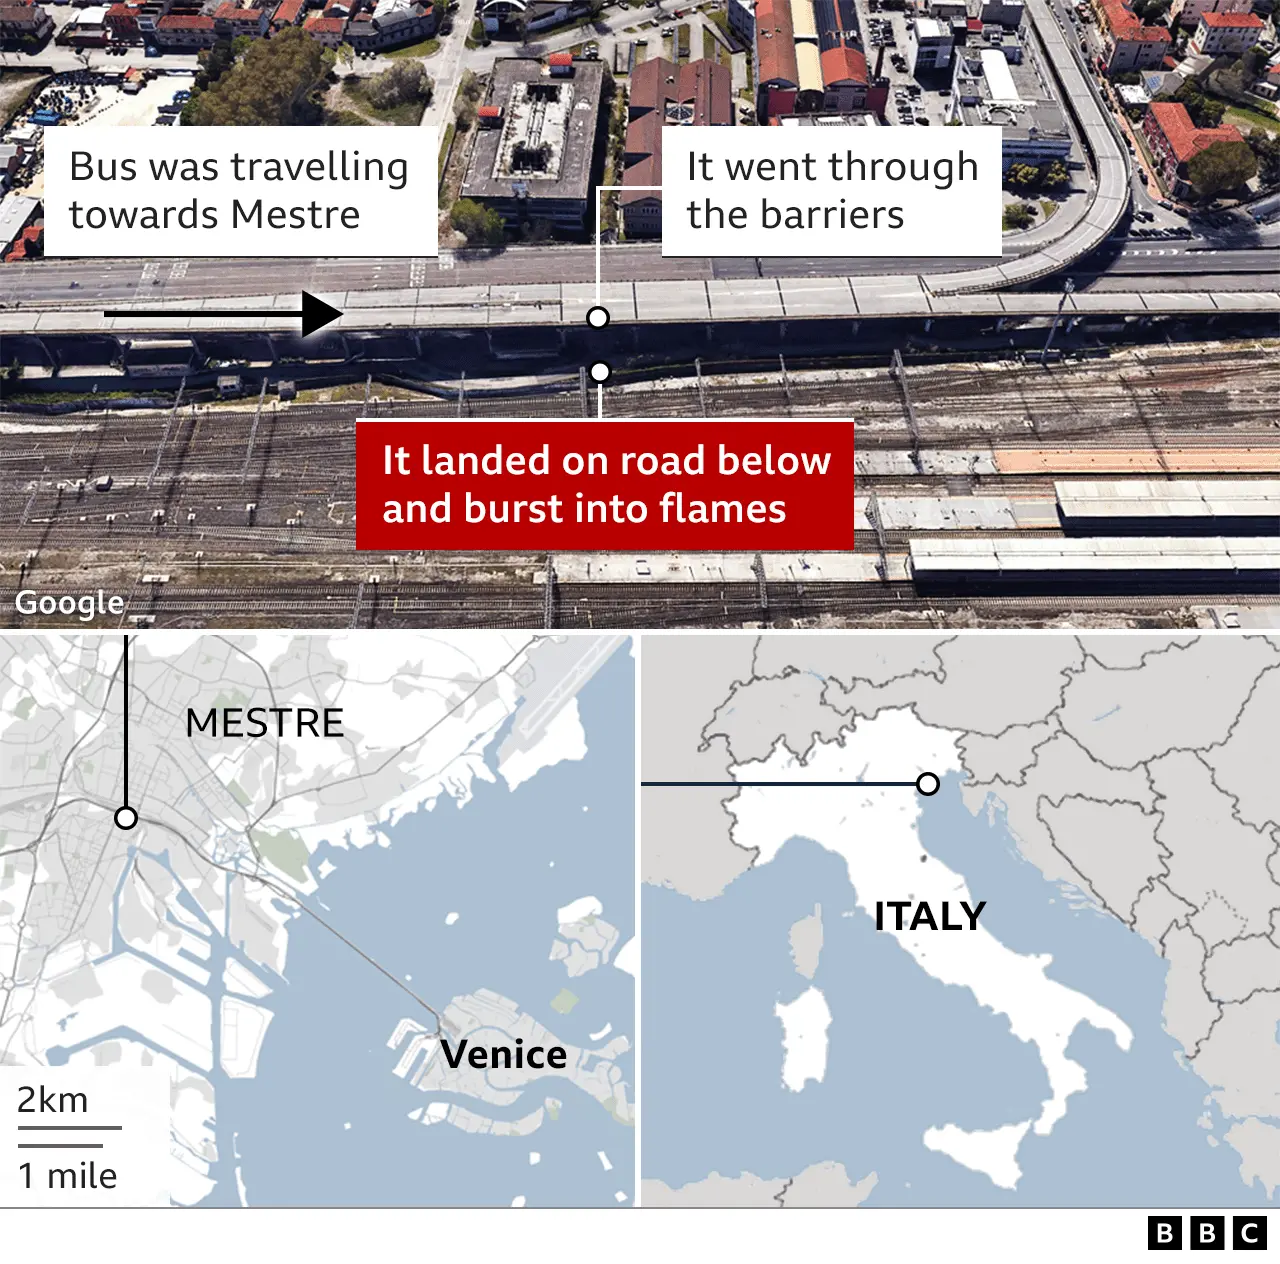 Venice tourist bus plunges from bridge, killing 21 (bbc.com)